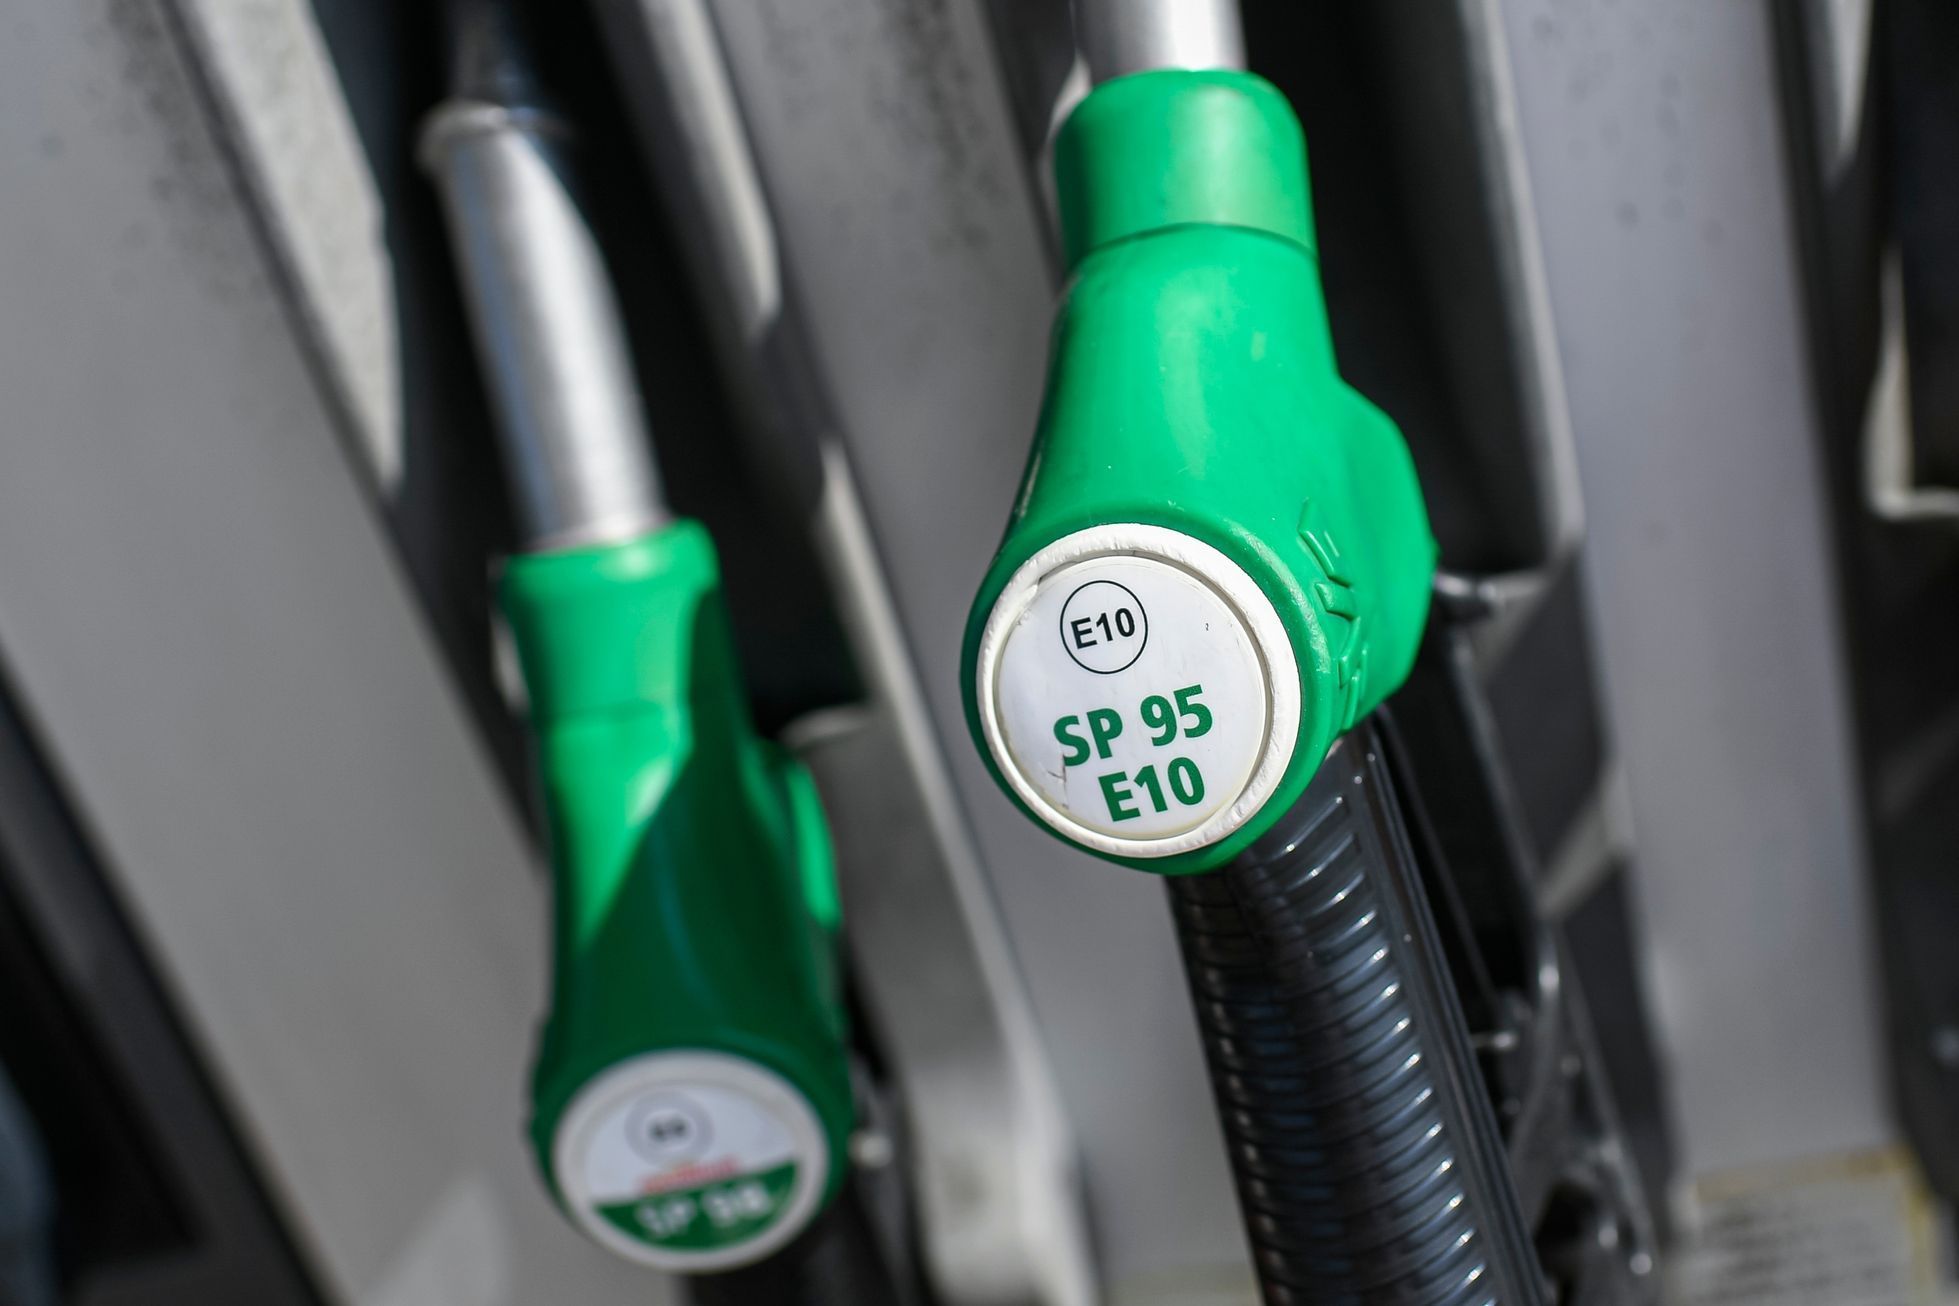 Nové palivo benzin Natural95 E10